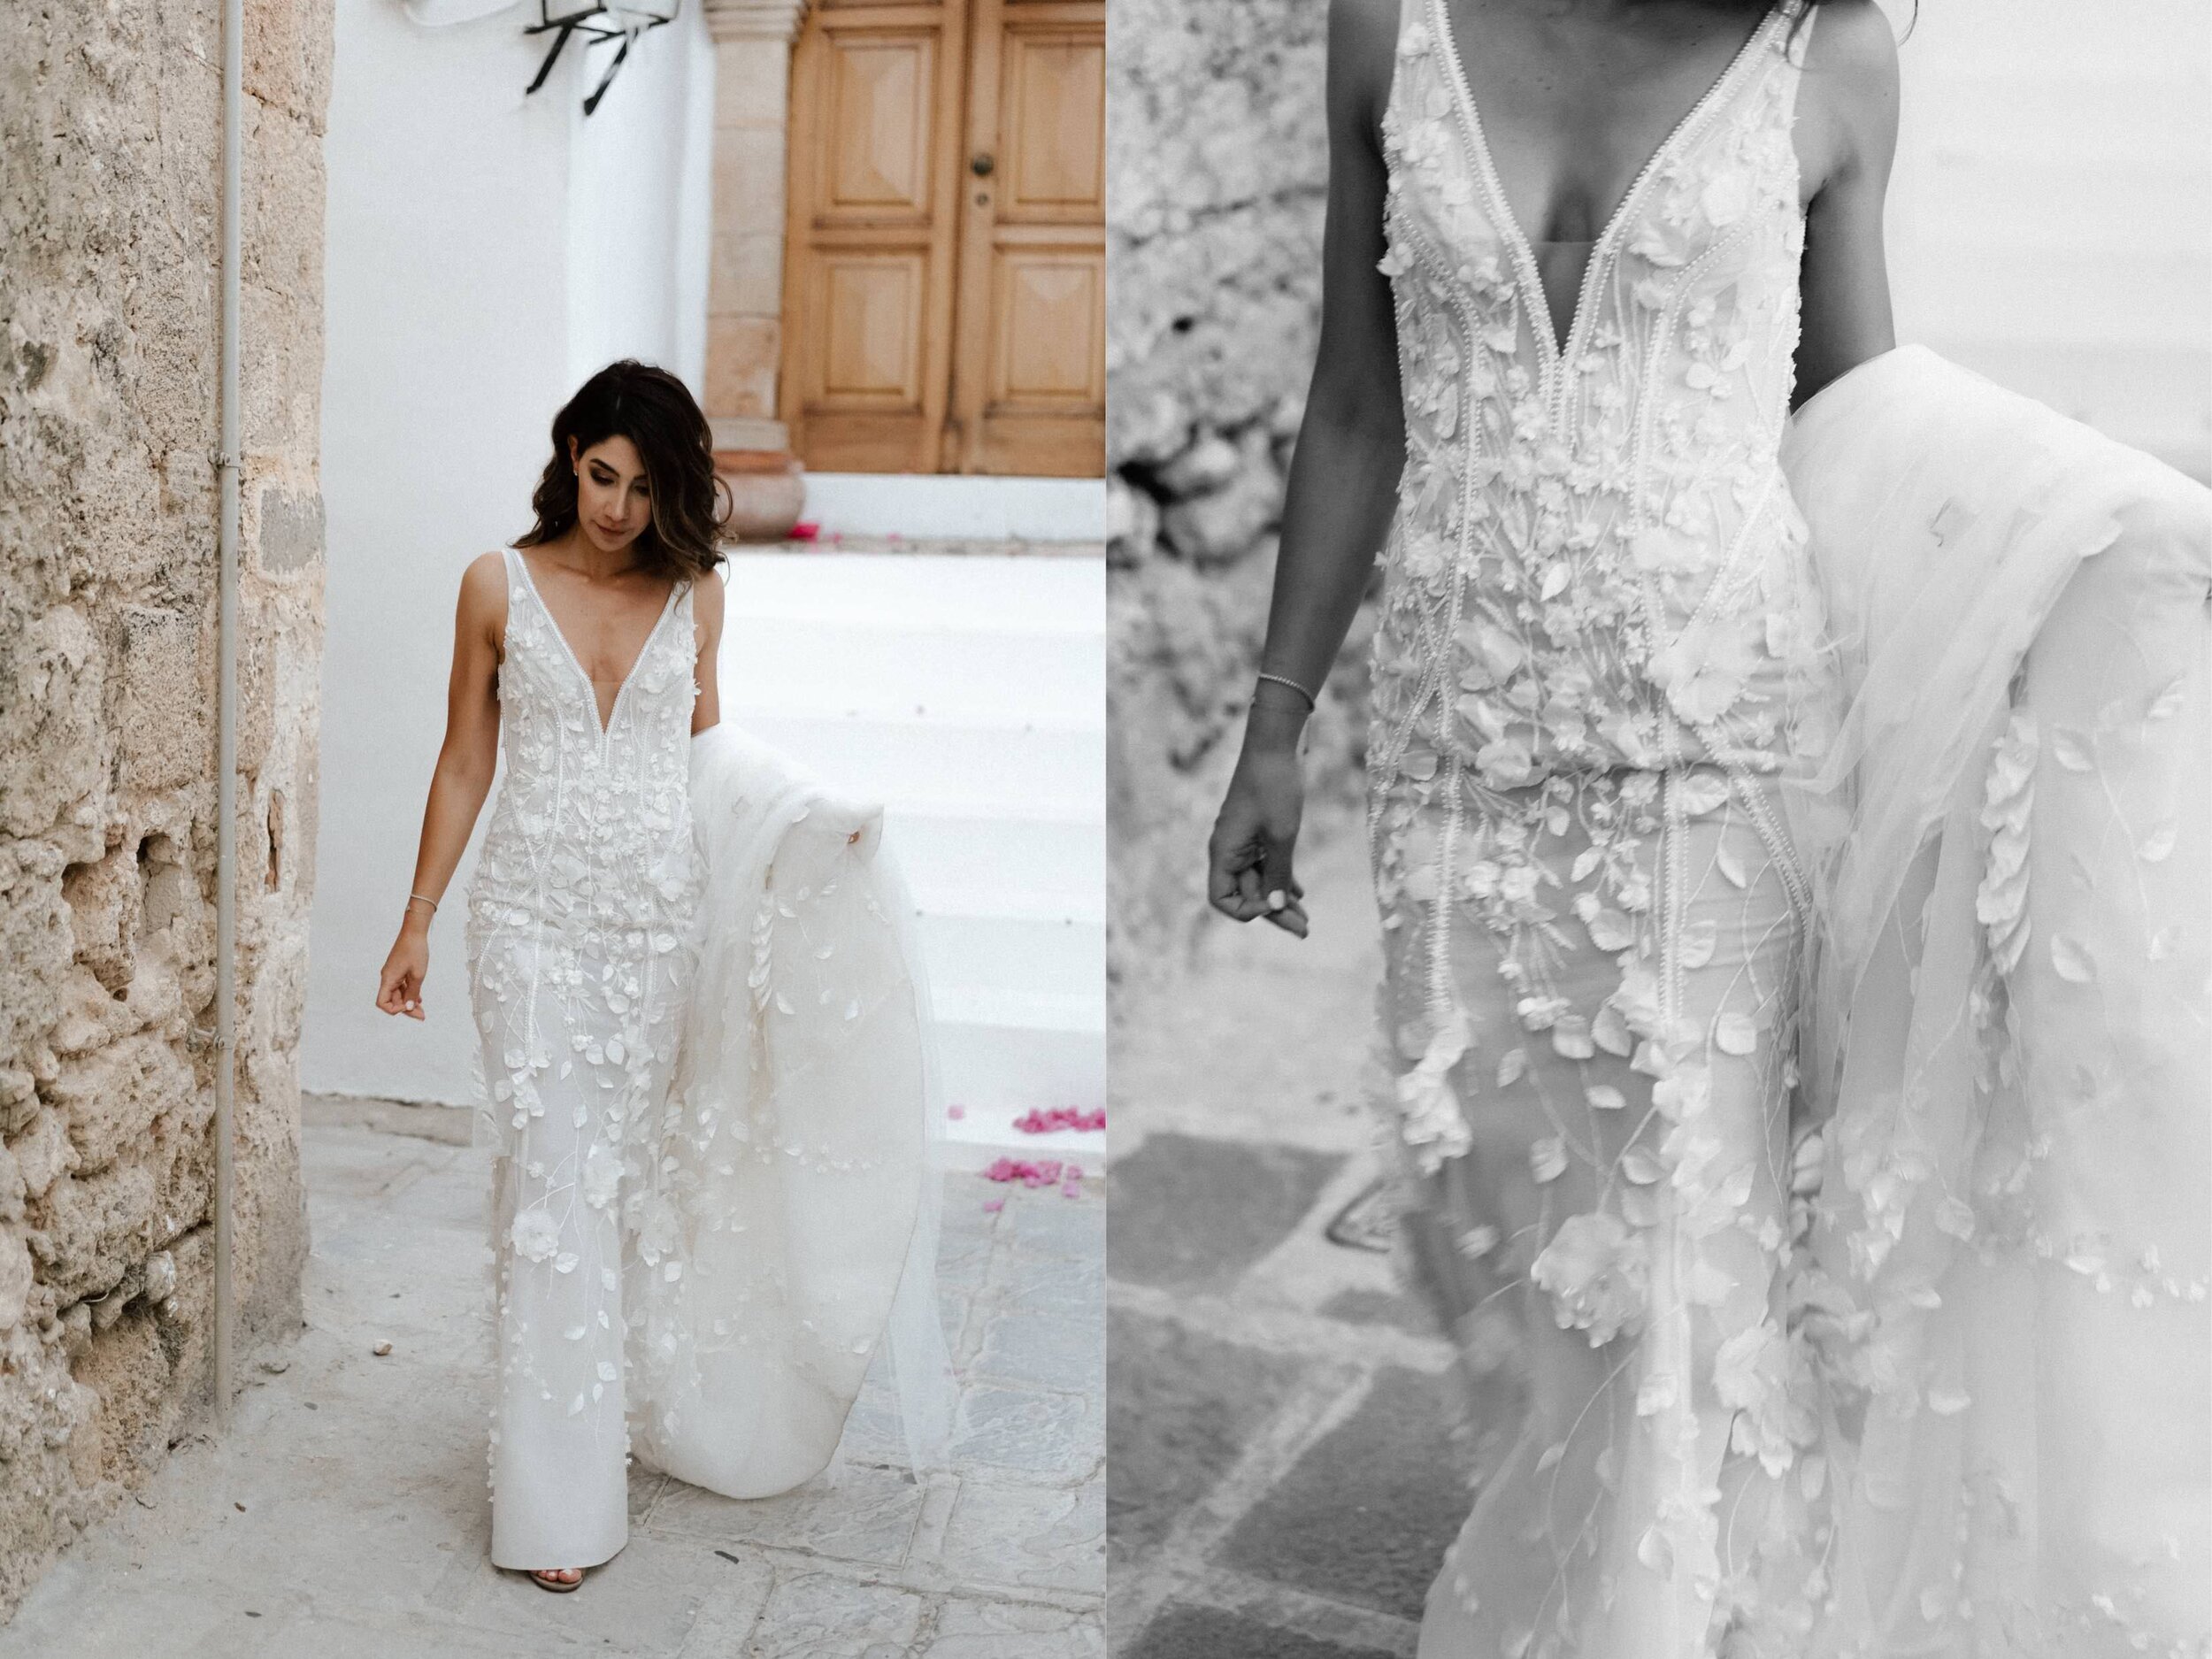 Greece+Santorini+Rhodes+wedding+photogtaphy-154.jpg